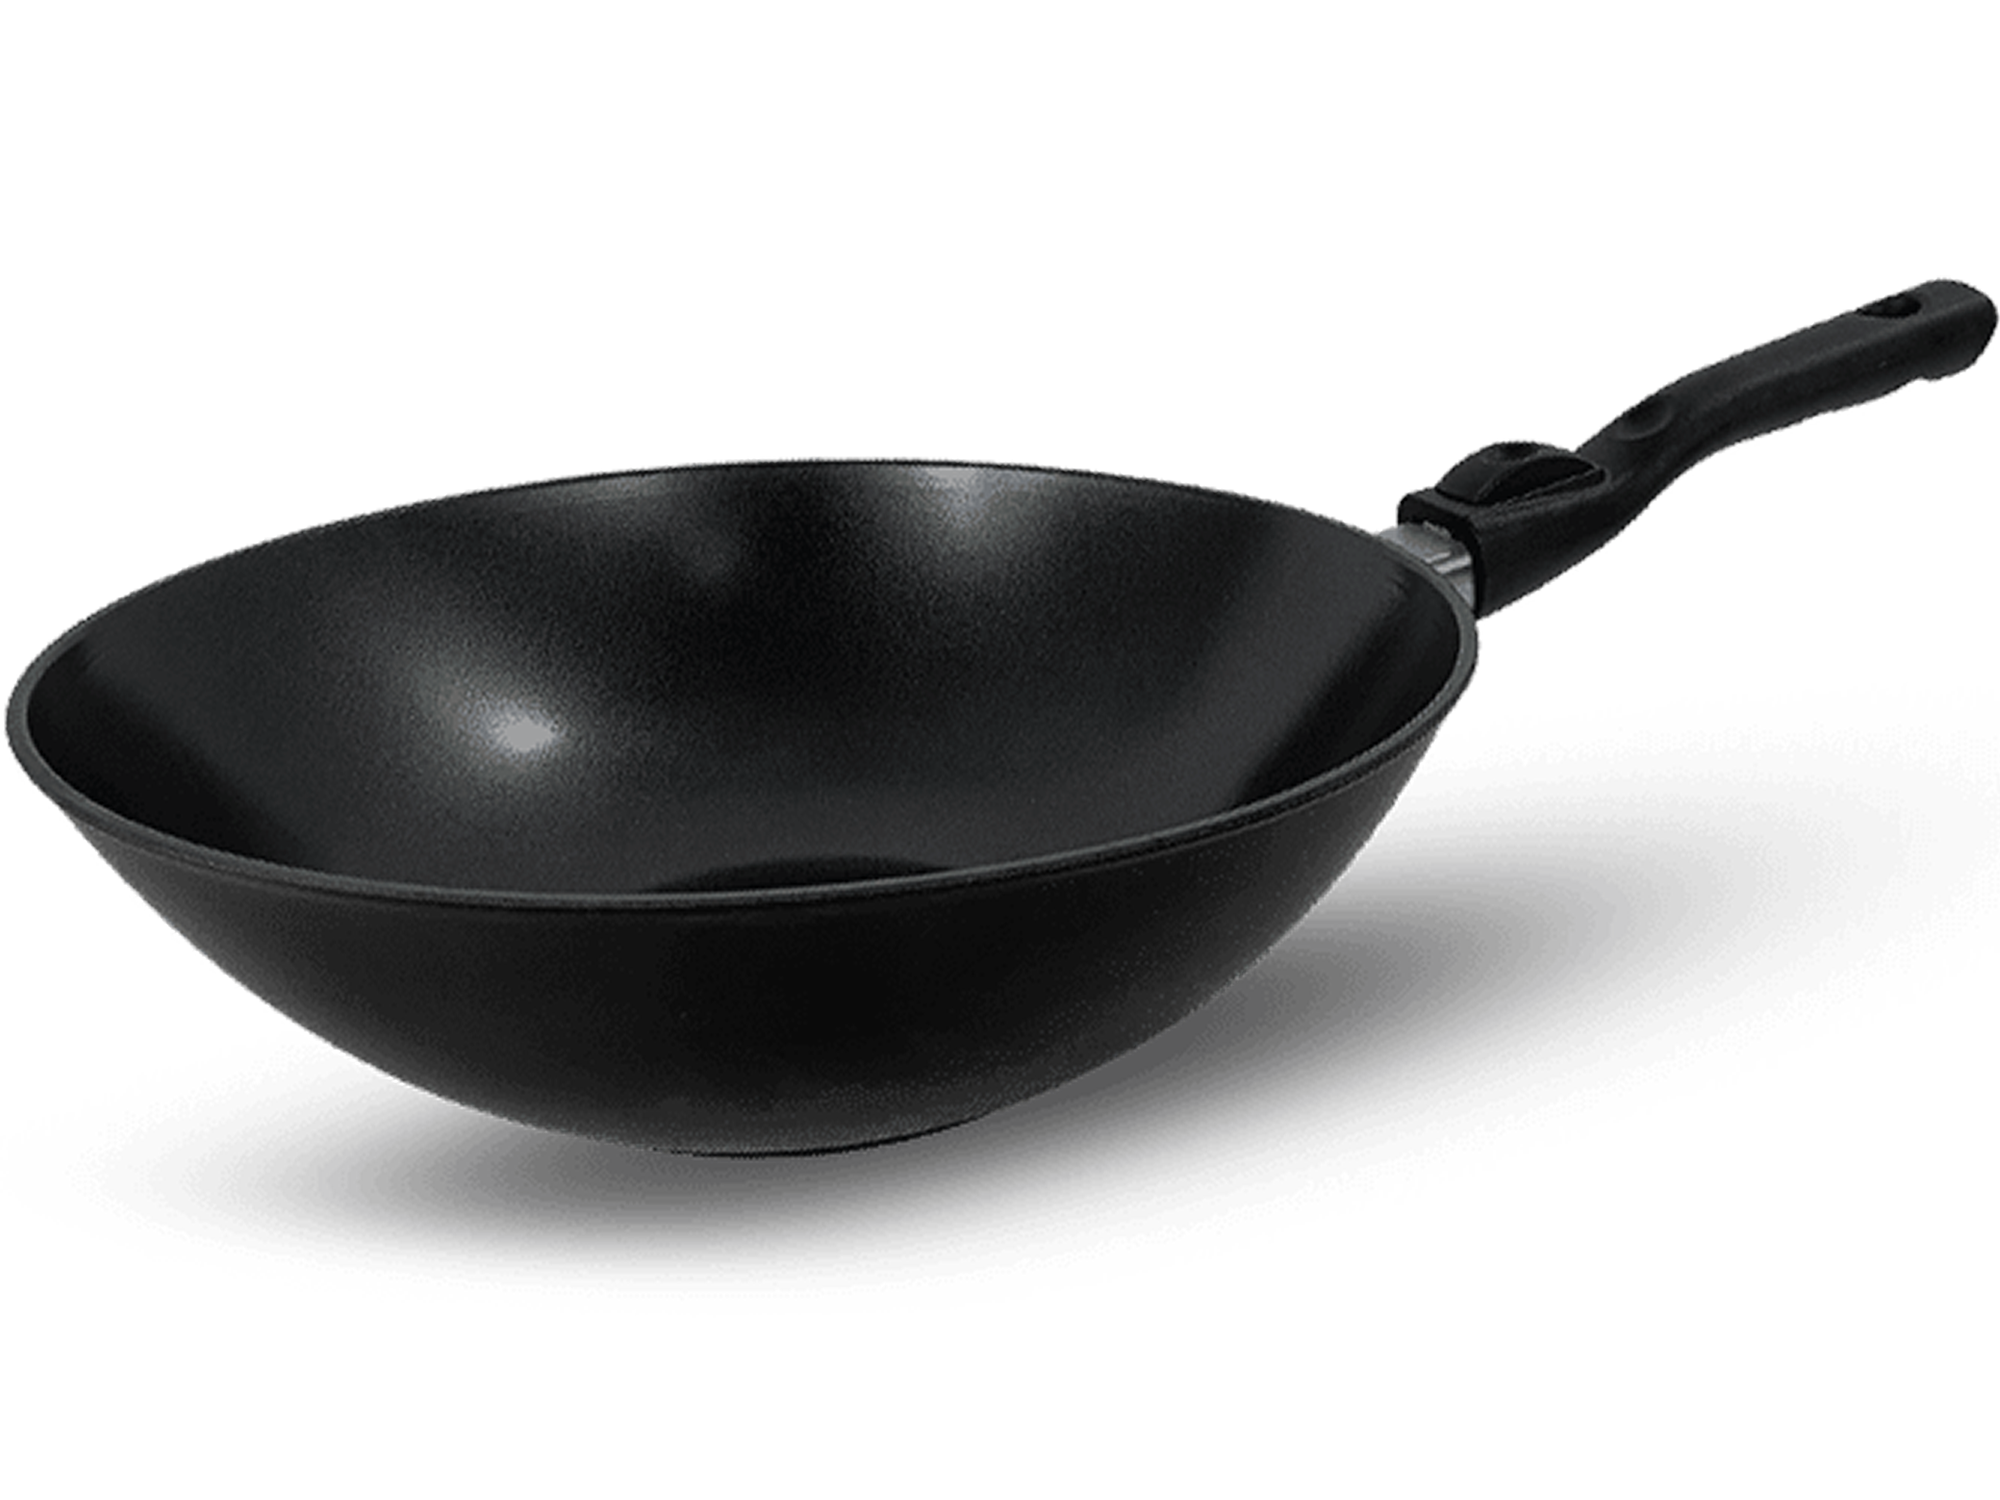 platte für grill,grill mit platte,grillen platte, wokpfanne kitchenline black 3 uai